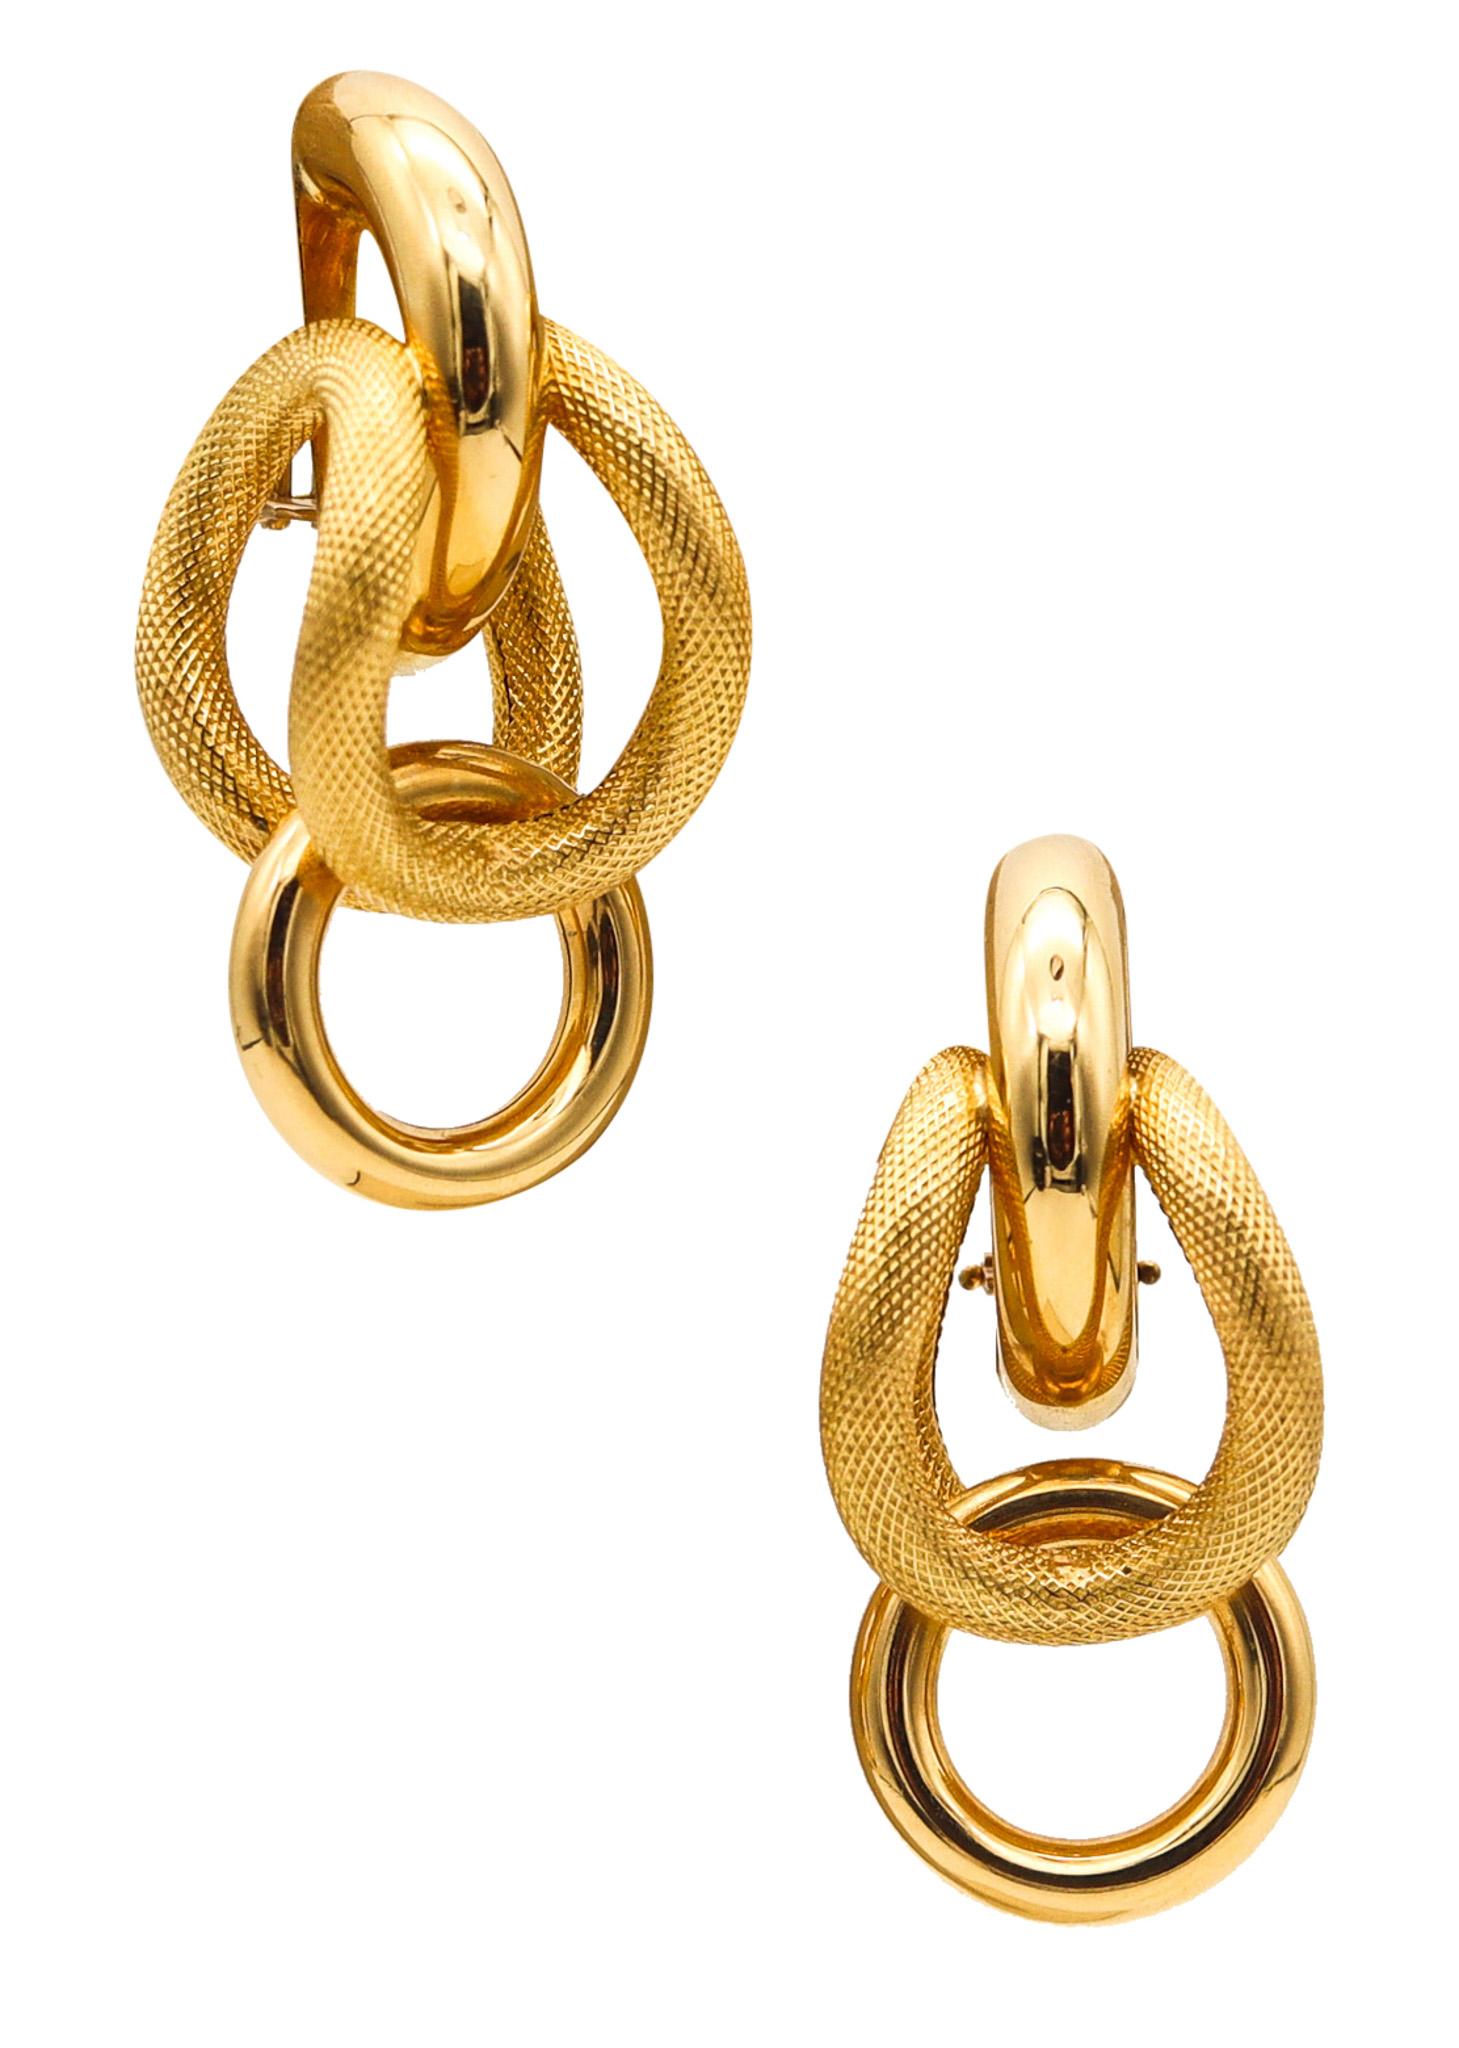 Riccardo Marotto, boucles d'oreilles tubulaires sculpturales en or jaune 18 carats texturé